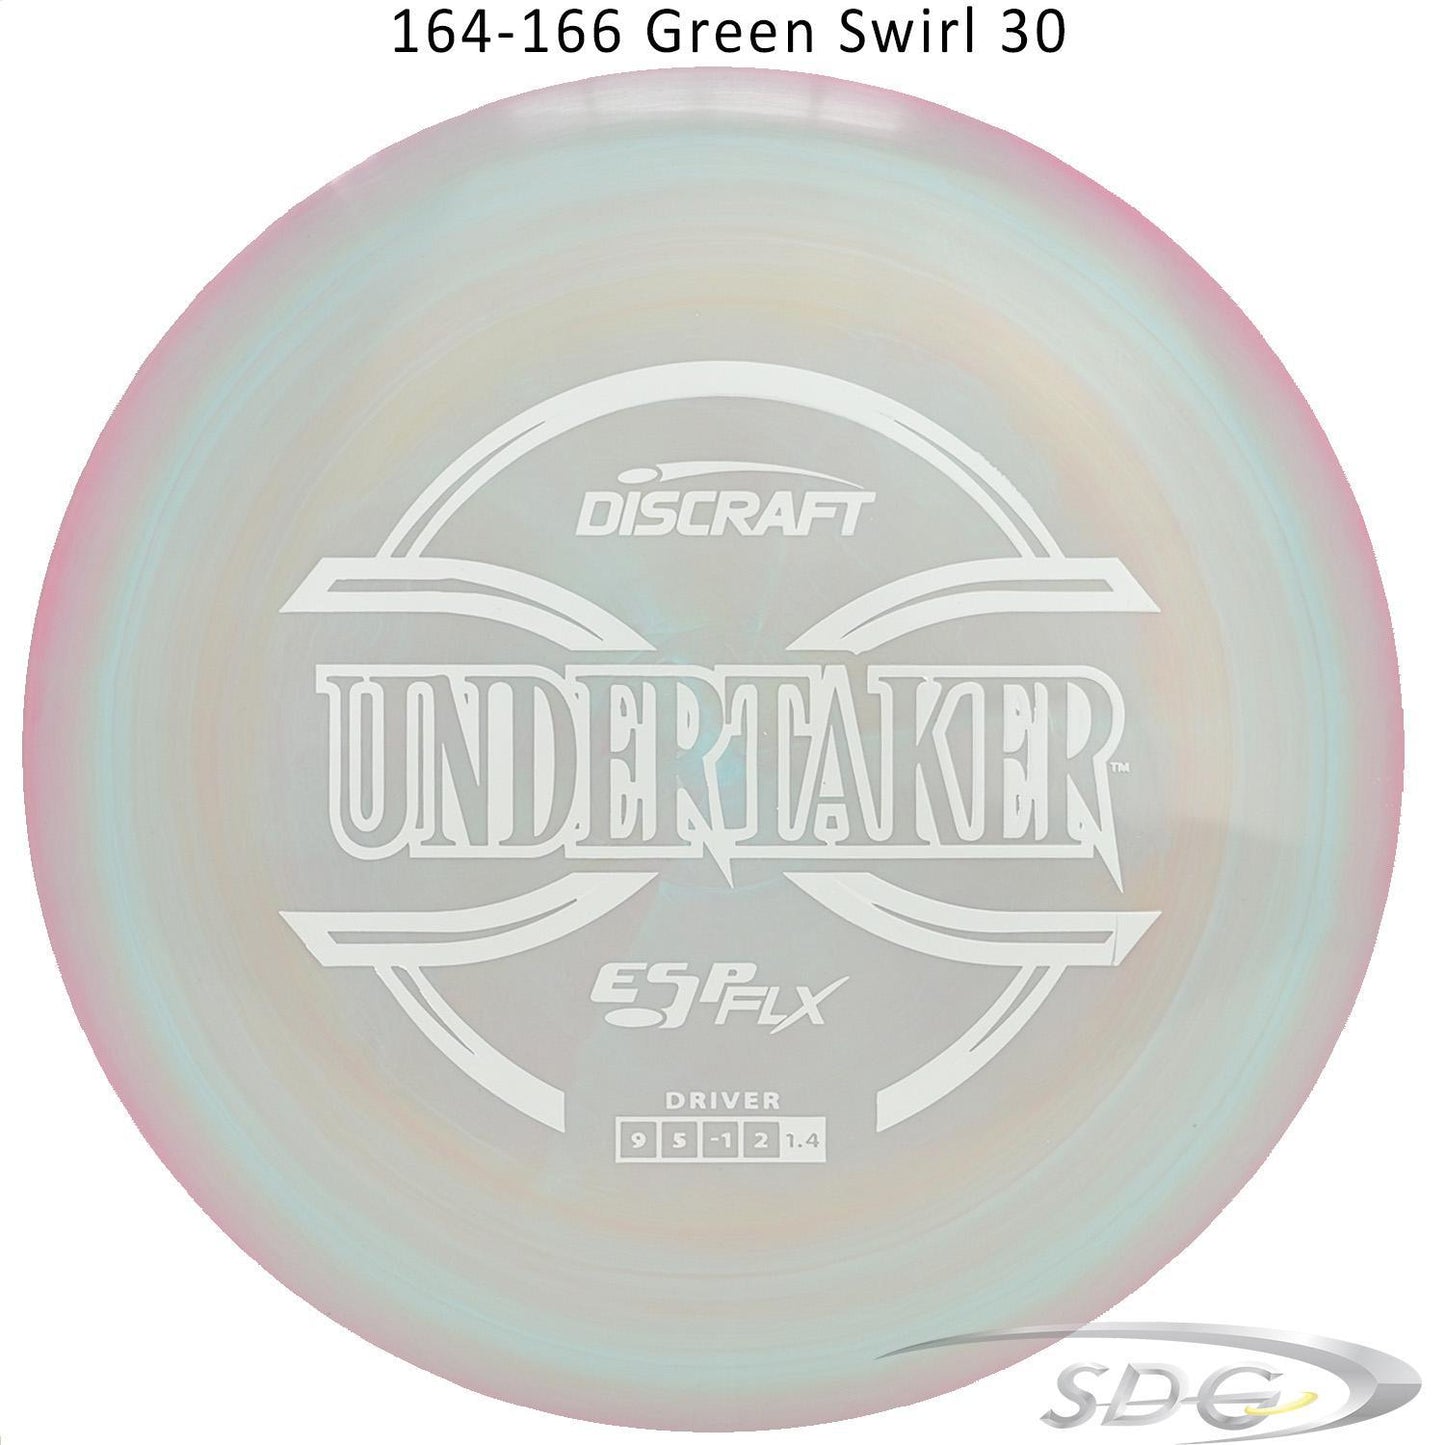 discraft-esp-flx-undertaker-disc-golf-distance-driver 164-166 Green Swirl 30 